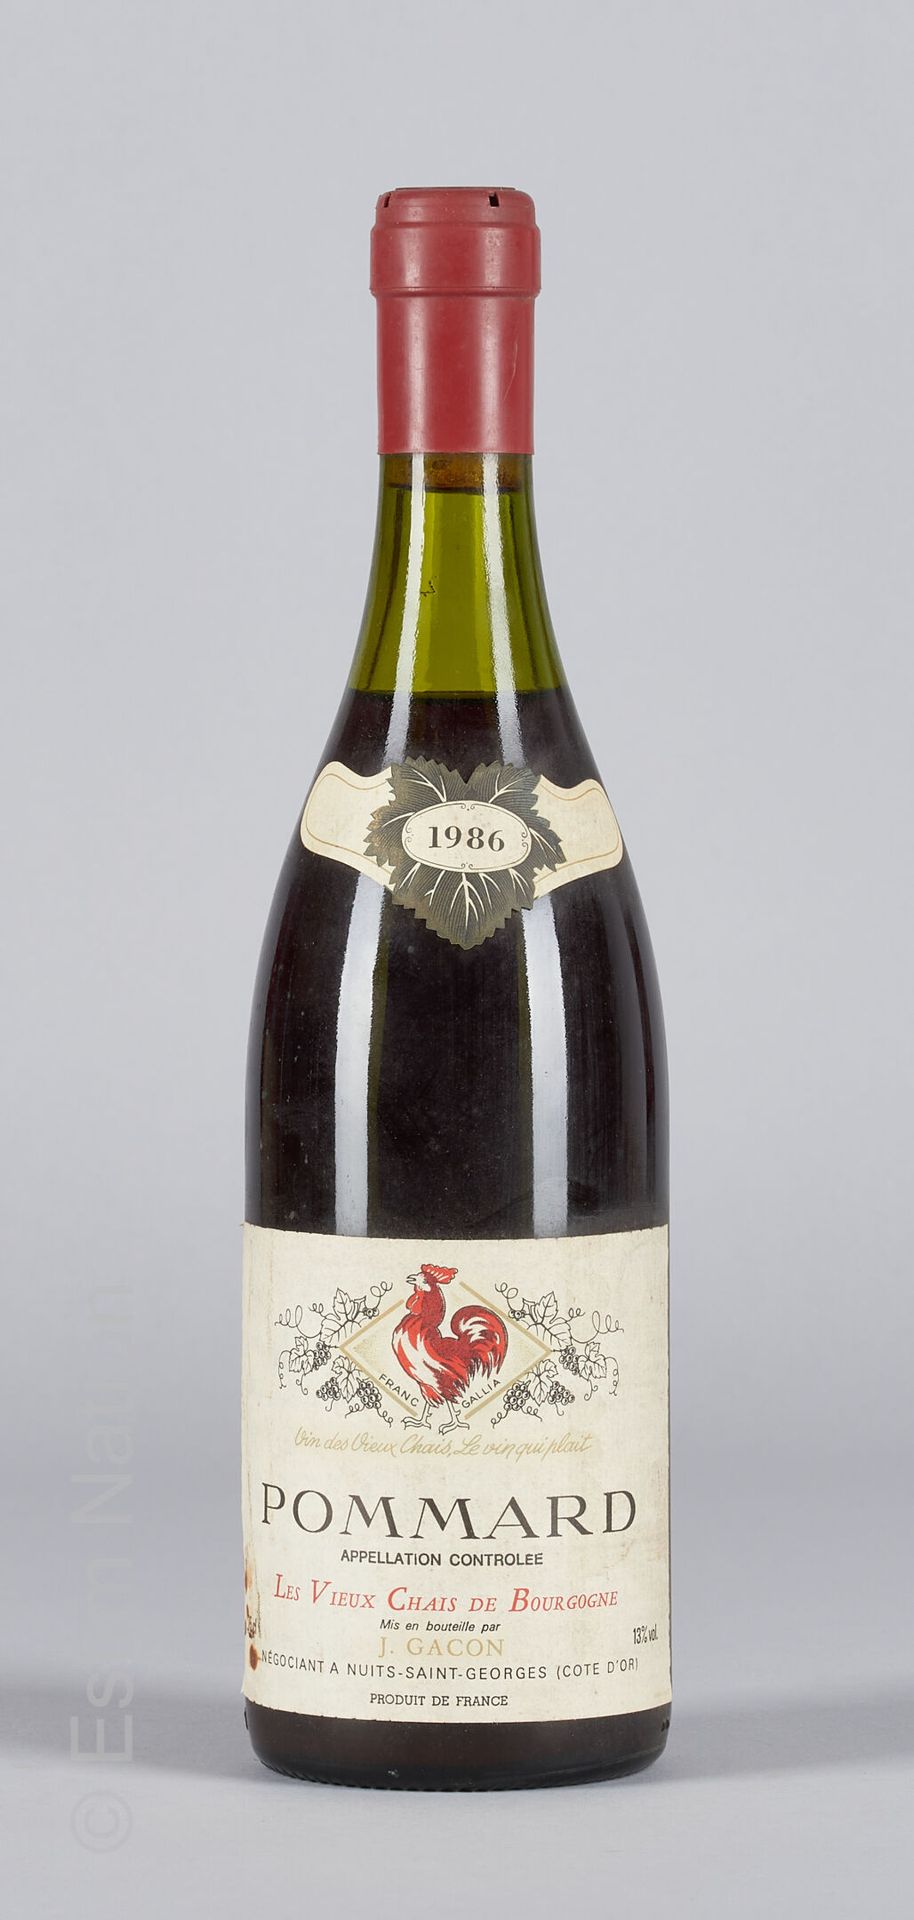 BOURGOGNE 1 bouteille de Pommard 1986 Les vieux chais de Bourgogne J. Gacon

(N.&hellip;